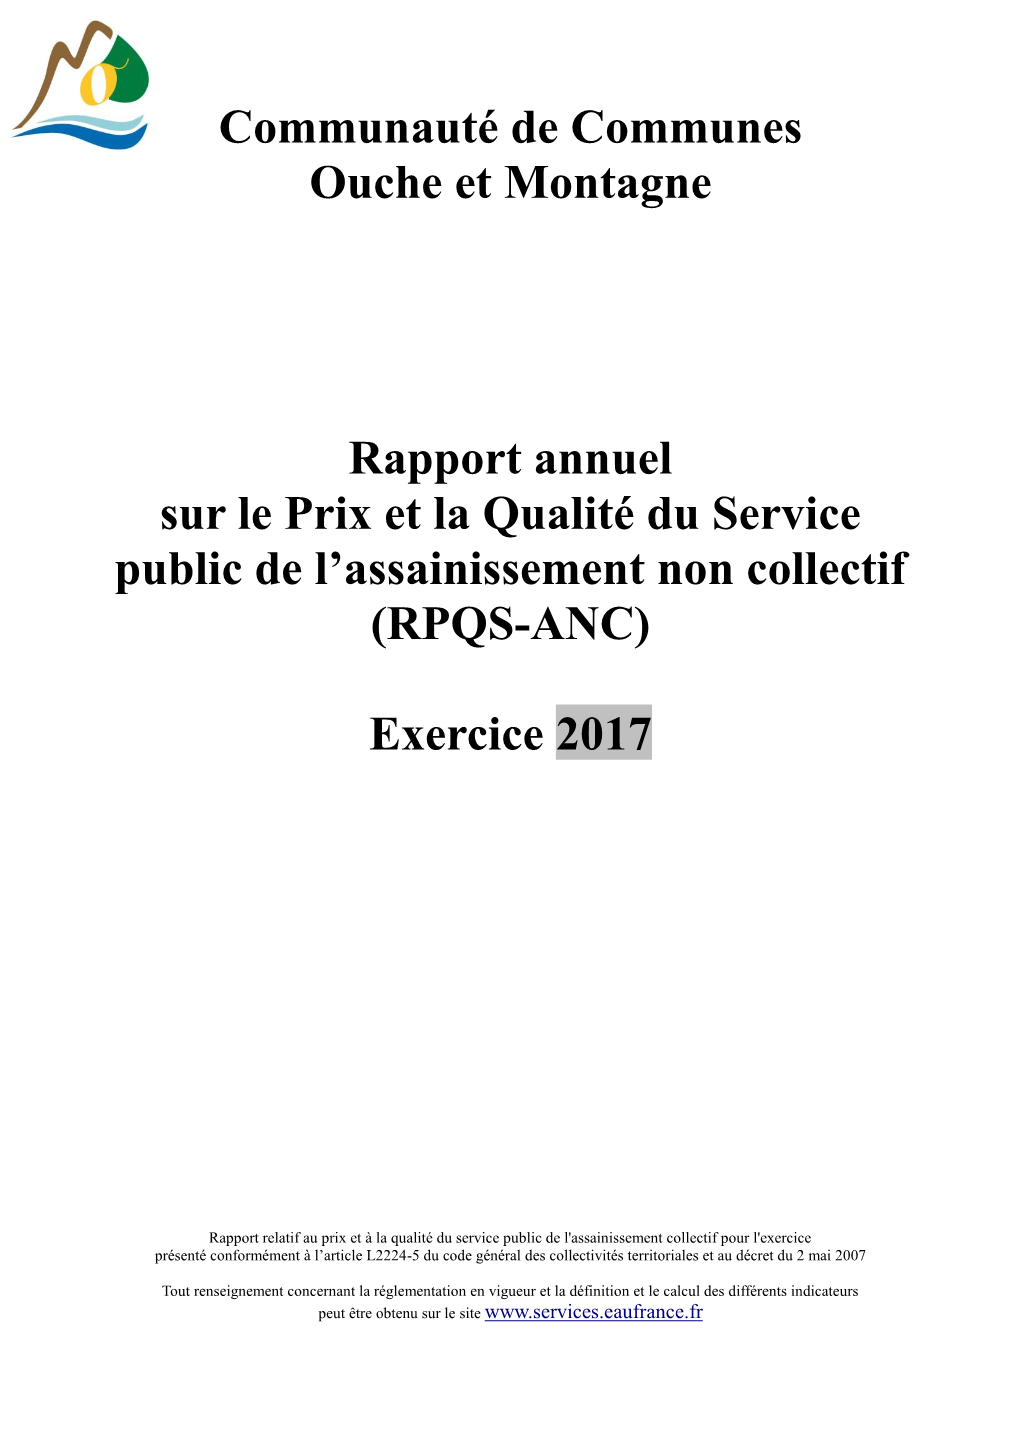 Rapport Annuel Sur Le Prix Et La Qualité Du Service Public De L’Assainissement Non Collectif (RPQS-ANC)